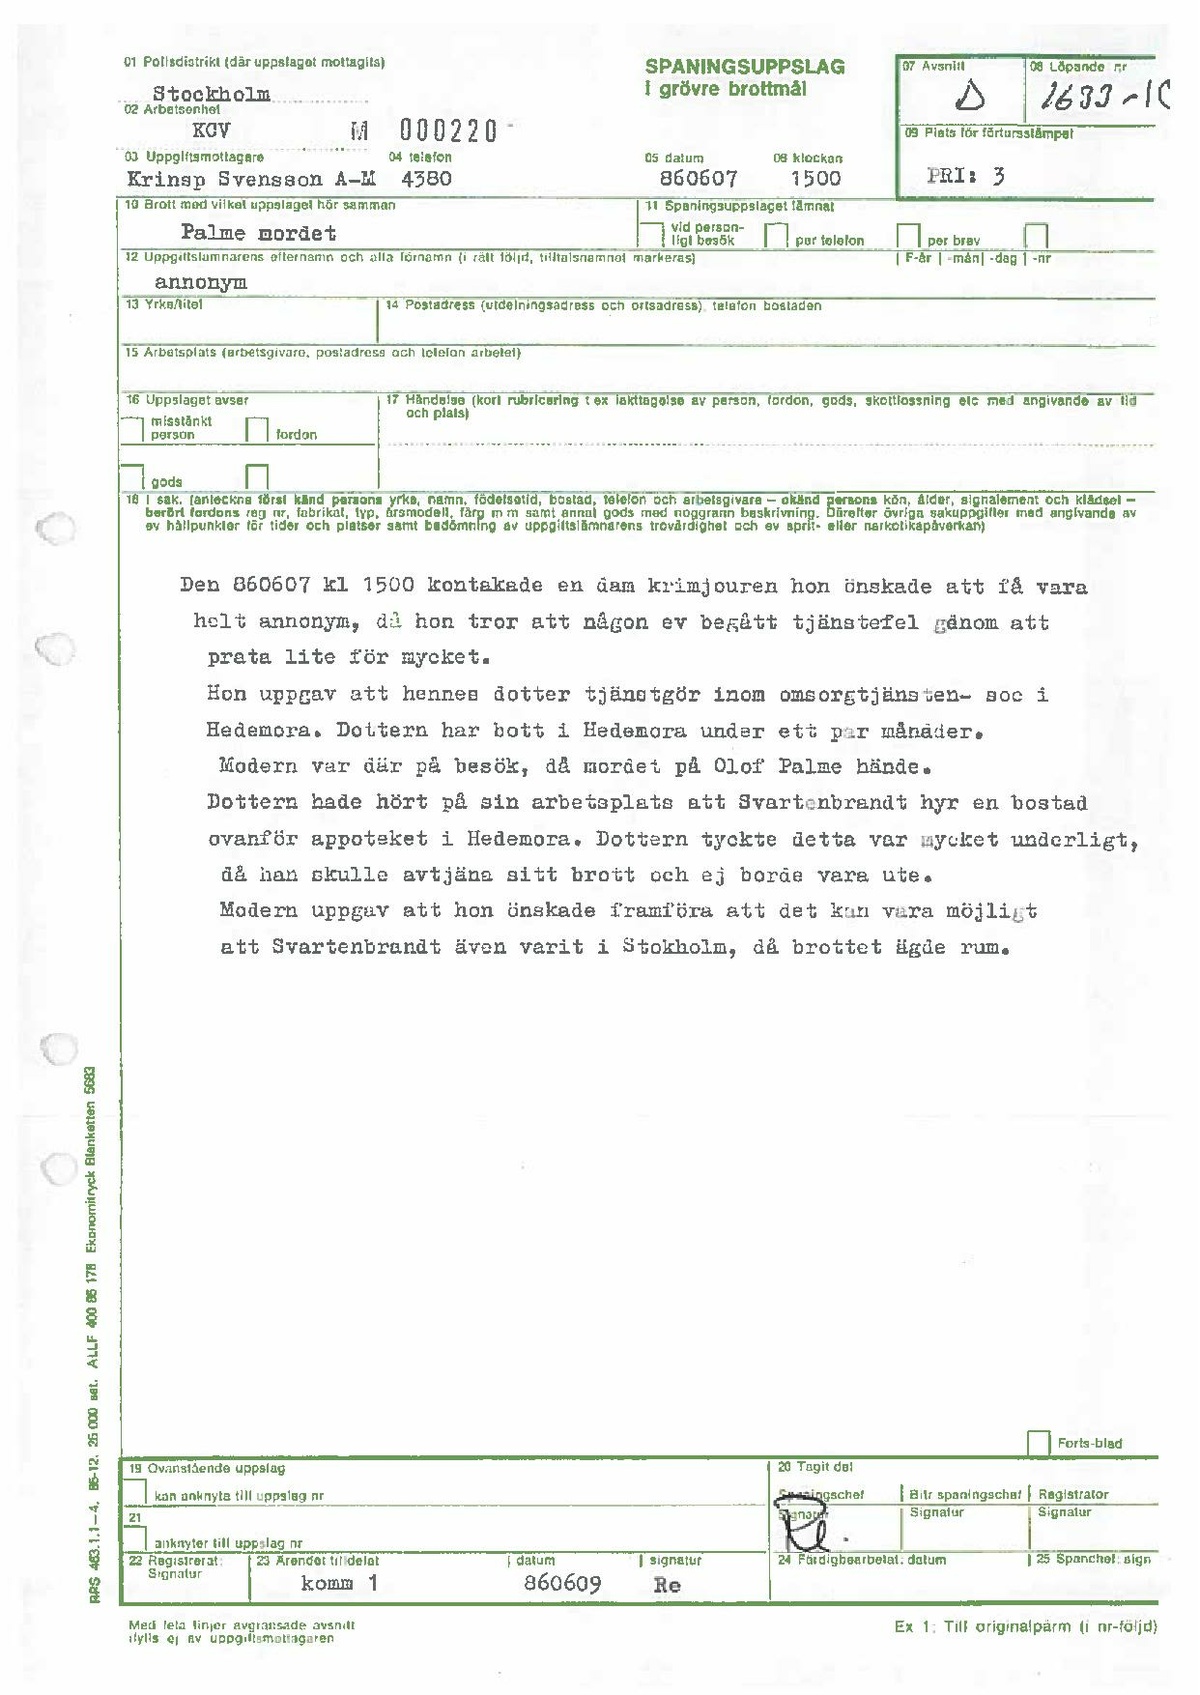 Pol-1986-06-07 1500 D1633-10 Anonym kvinna tipsar om att Lars-Inge Svartenbrandt hyr bostad.pdf